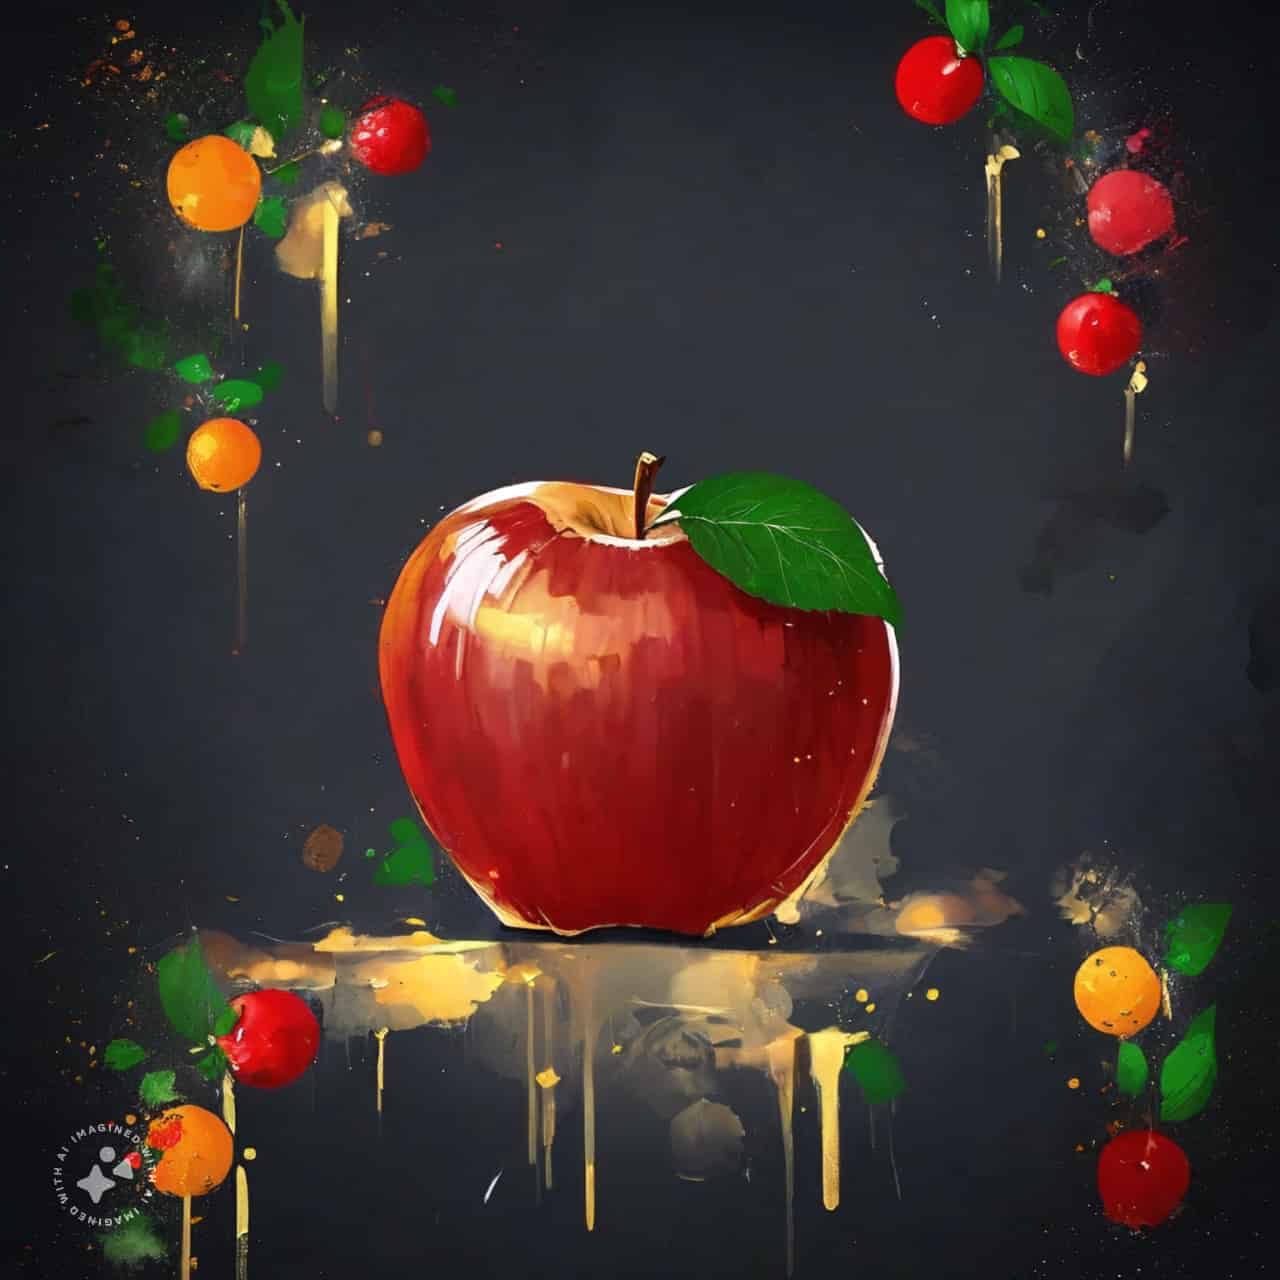 نقاشی ساده سیب برای شب یلدا (2)